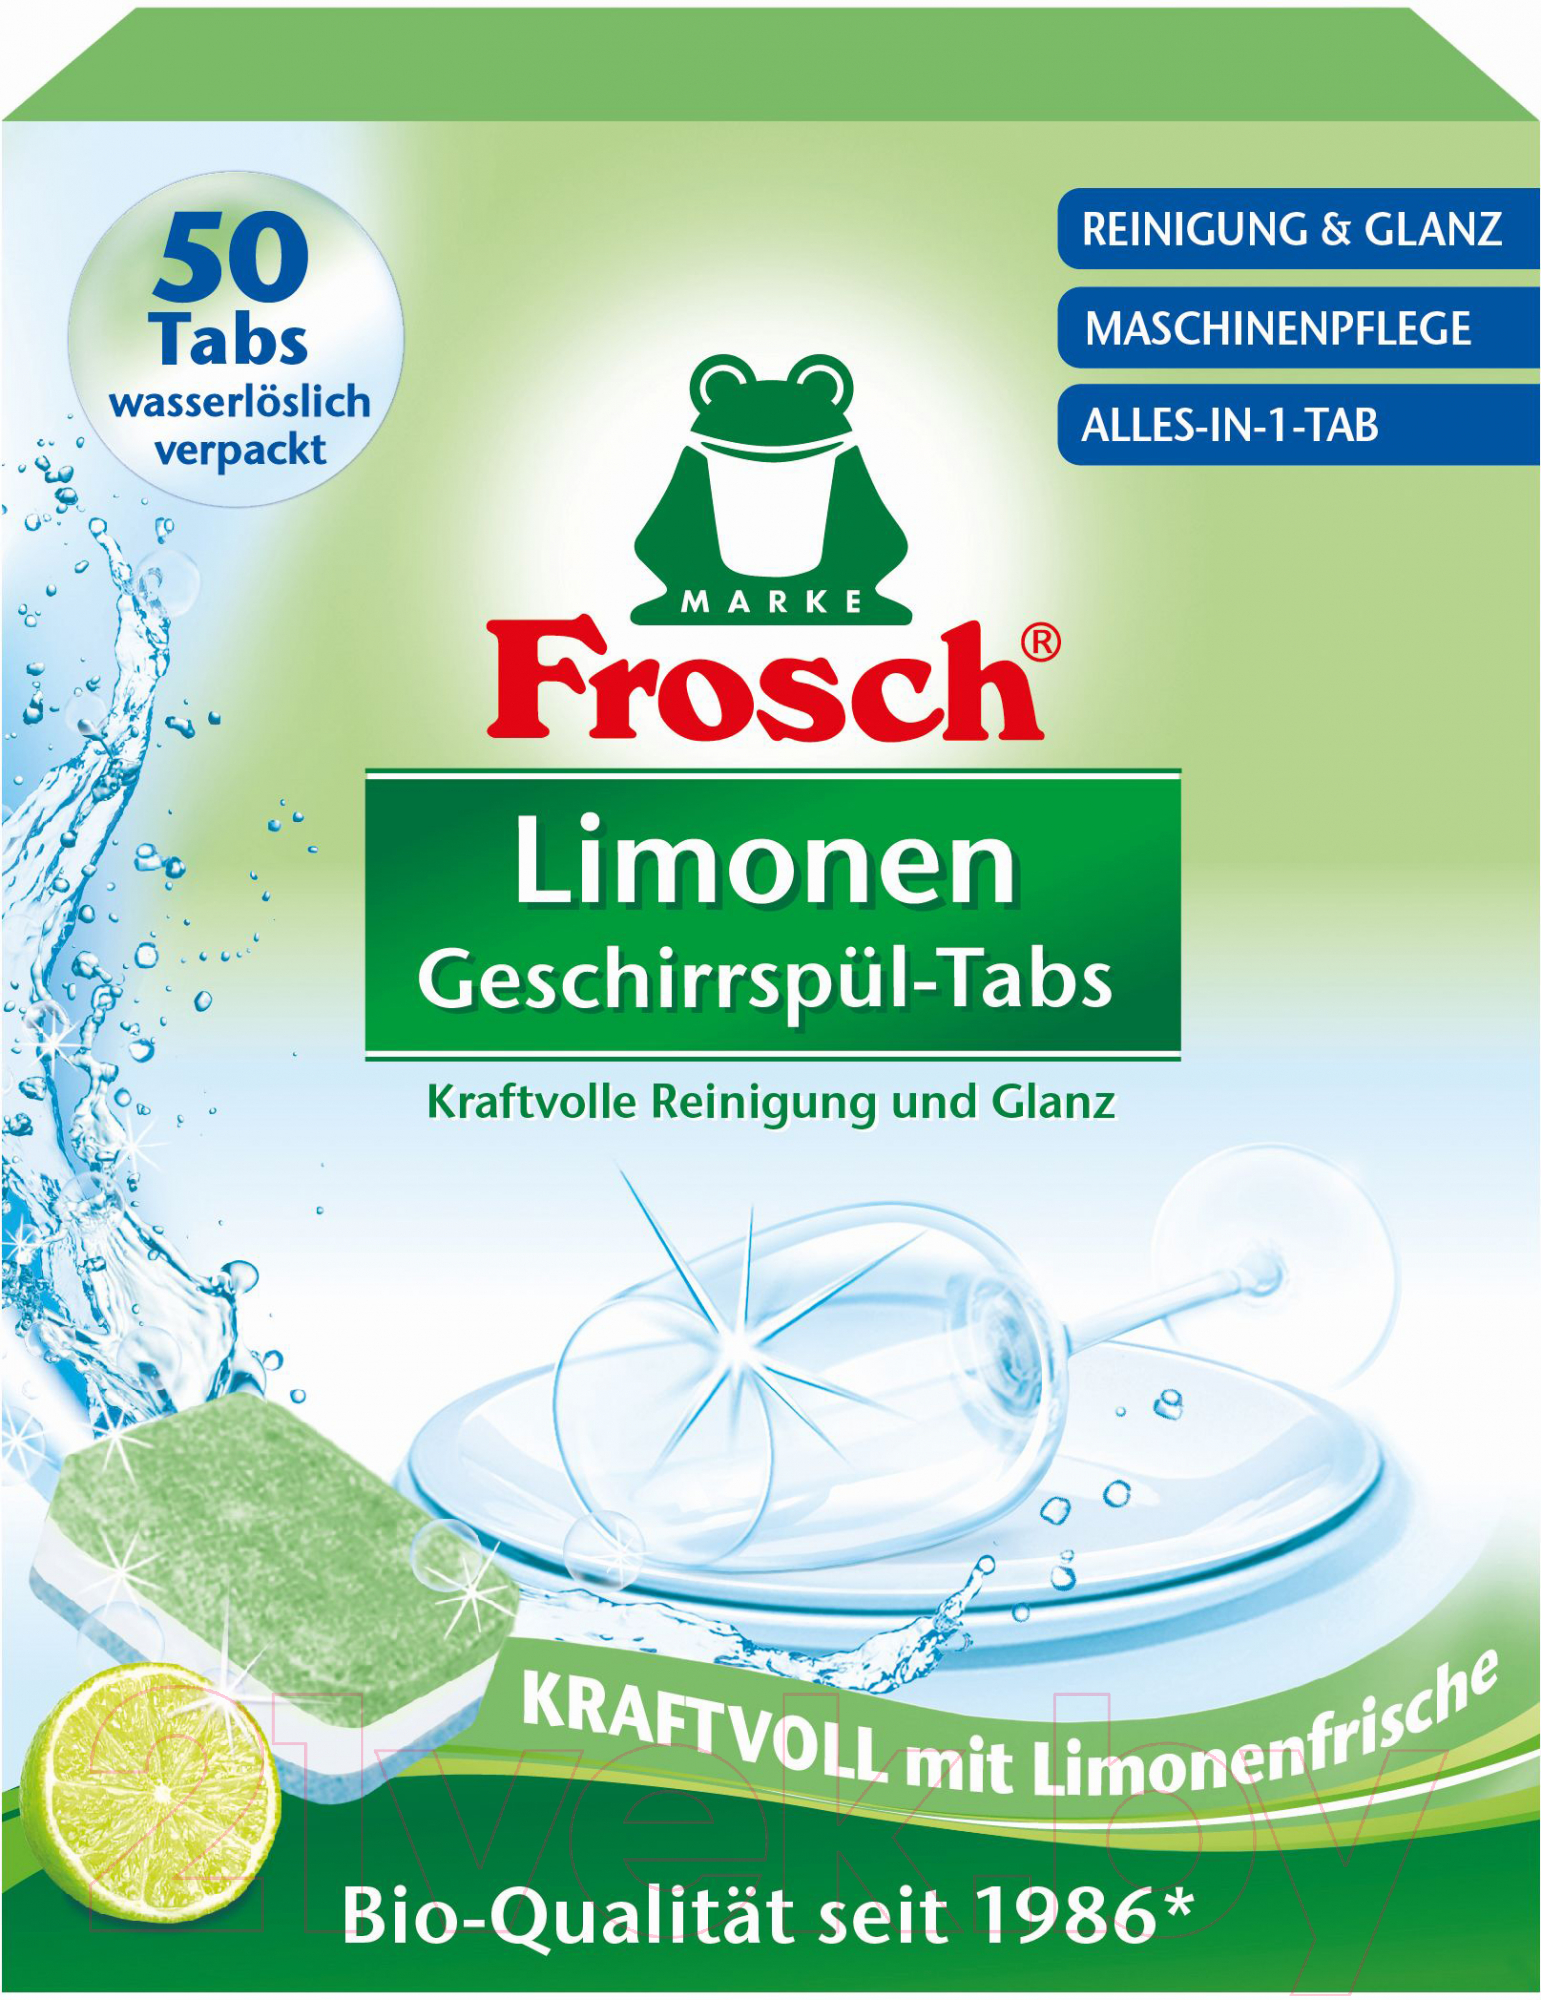 Таблетки для посудомоечных машин Frosch Лимон